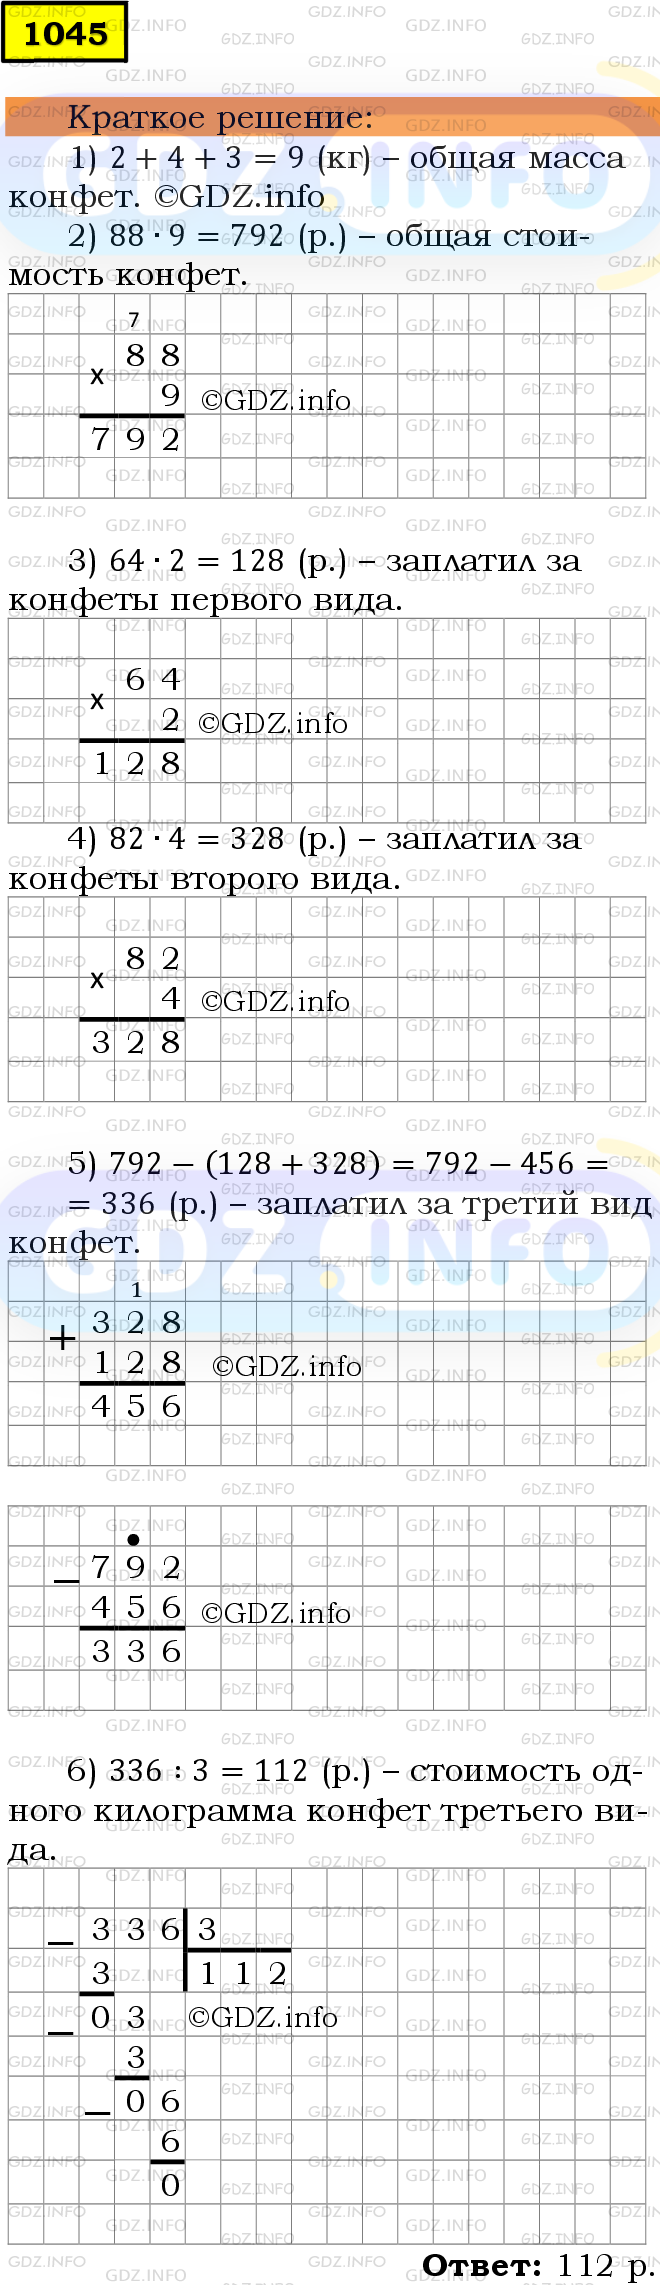 Фото решения 6: Номер №1045 из ГДЗ по Математике 5 класс: Мерзляк А.Г. г.